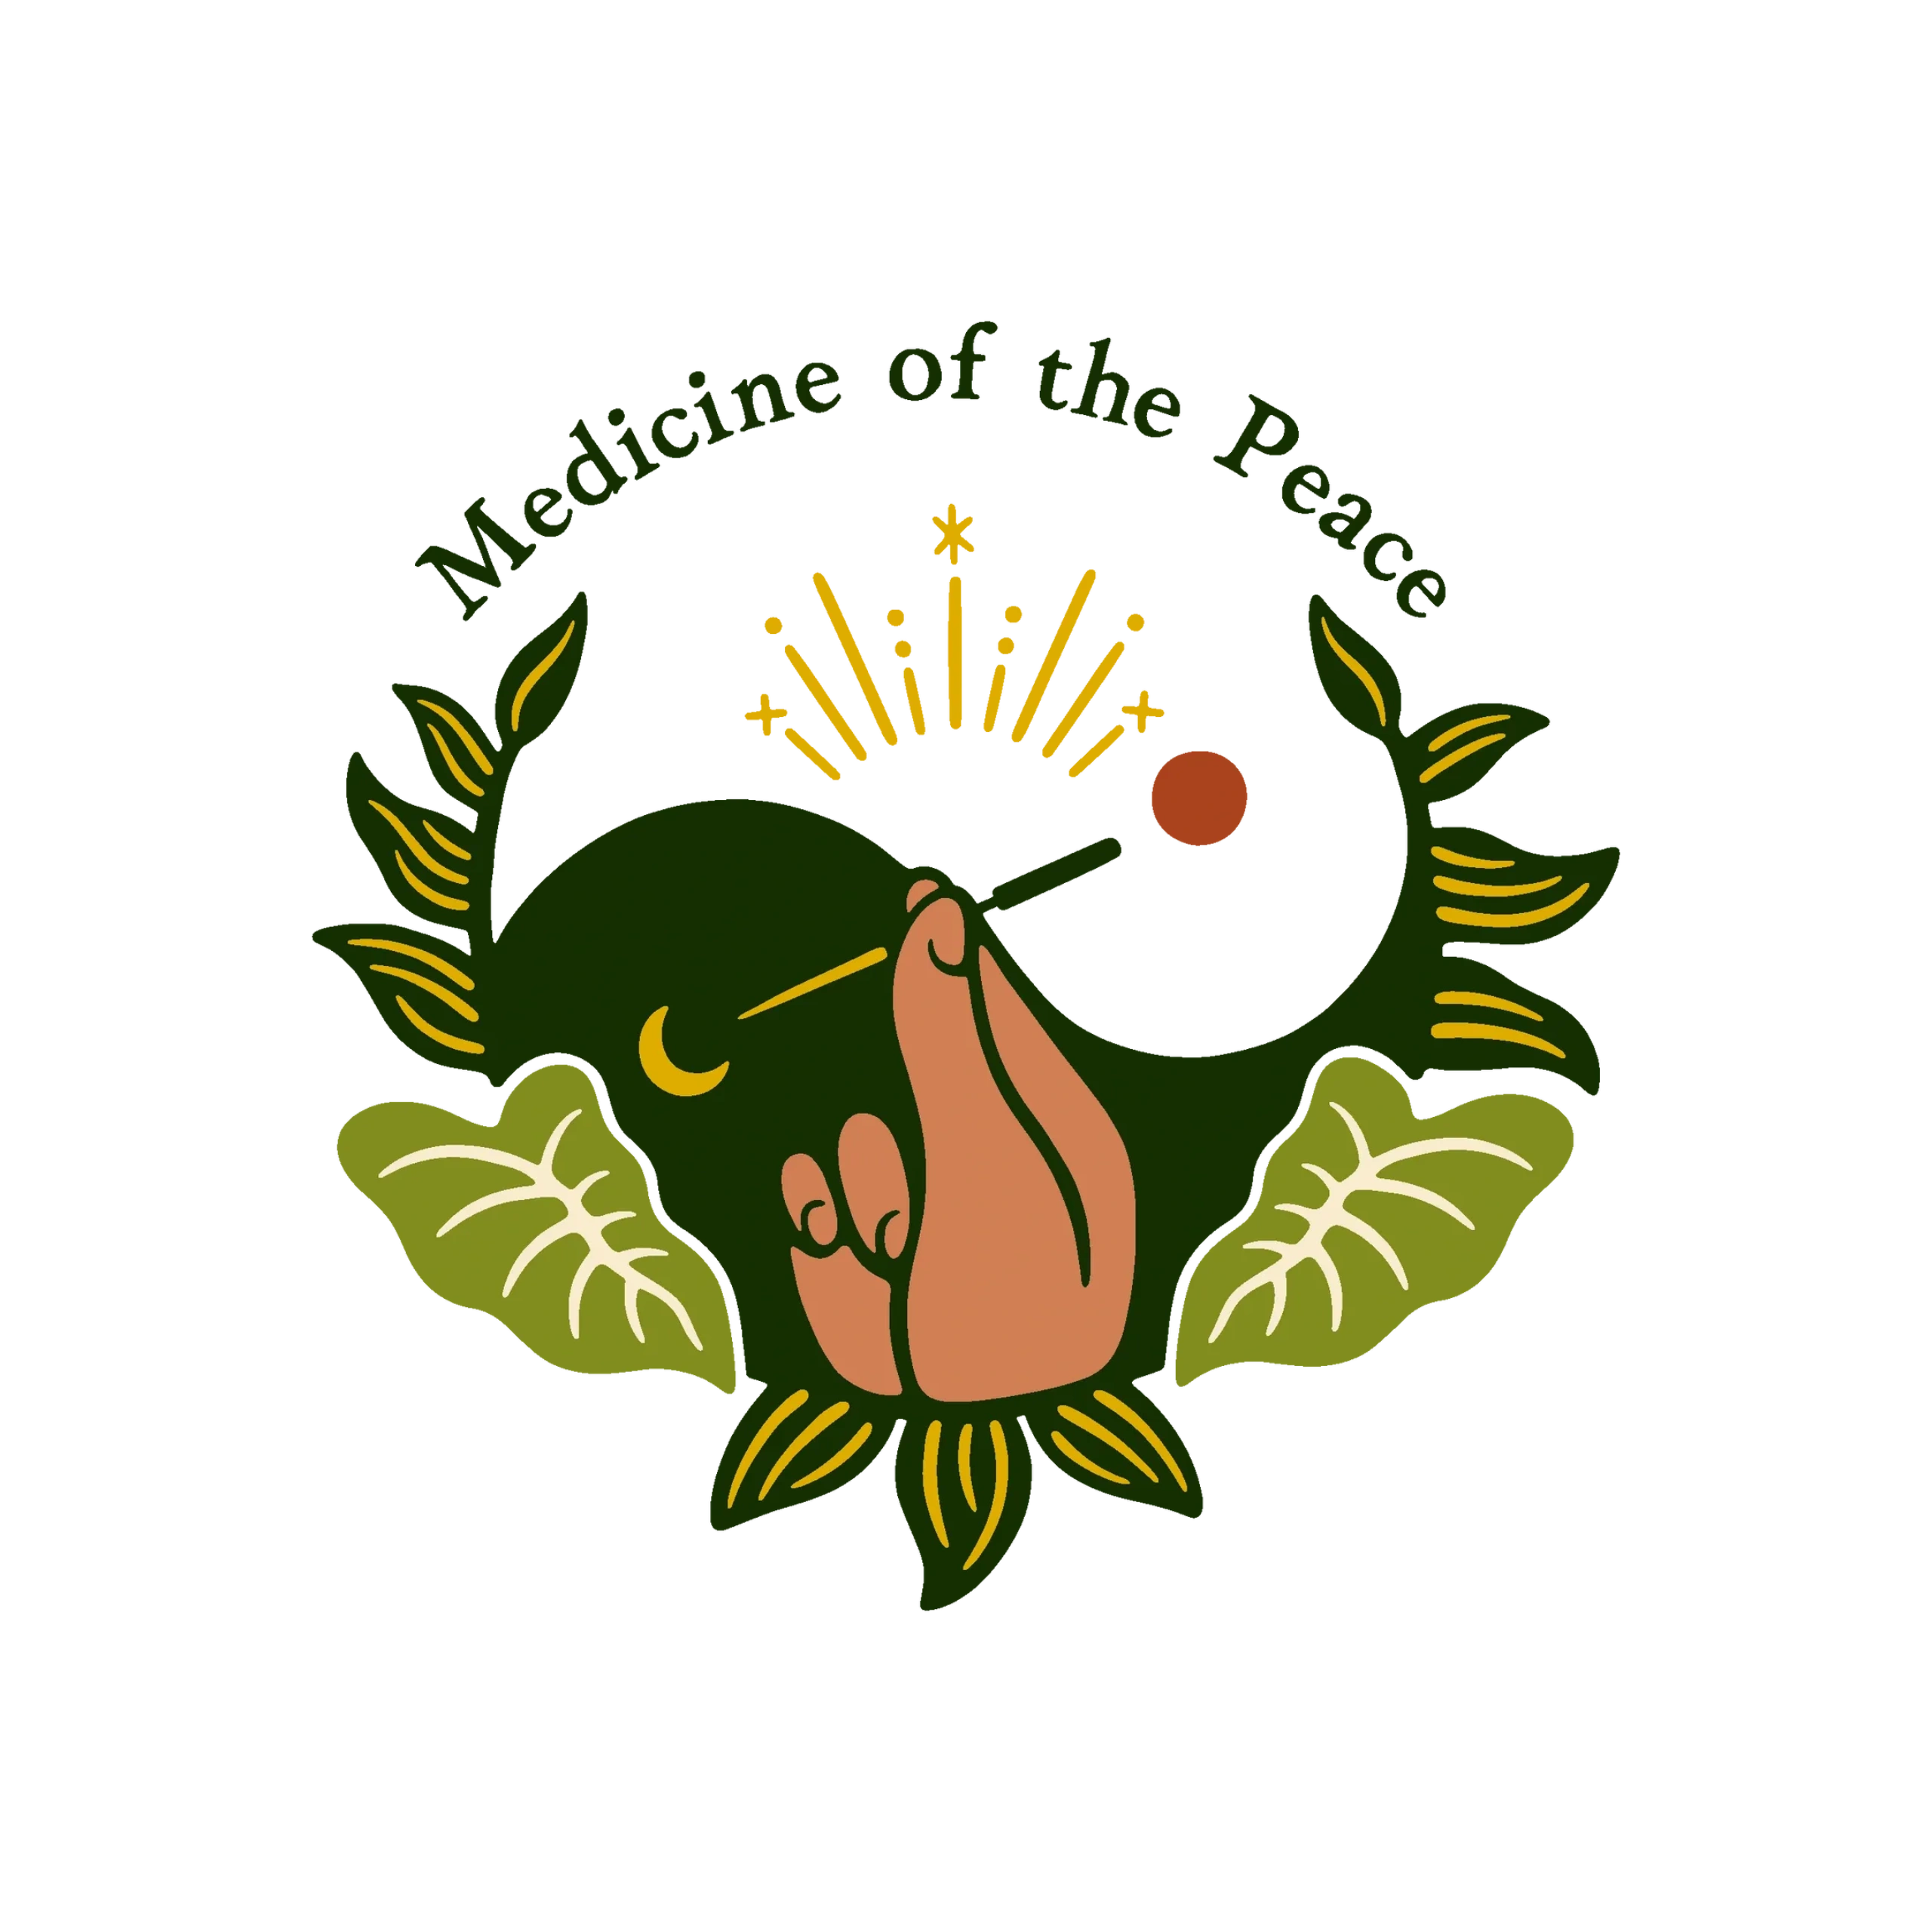 Medicine of the Peace logo